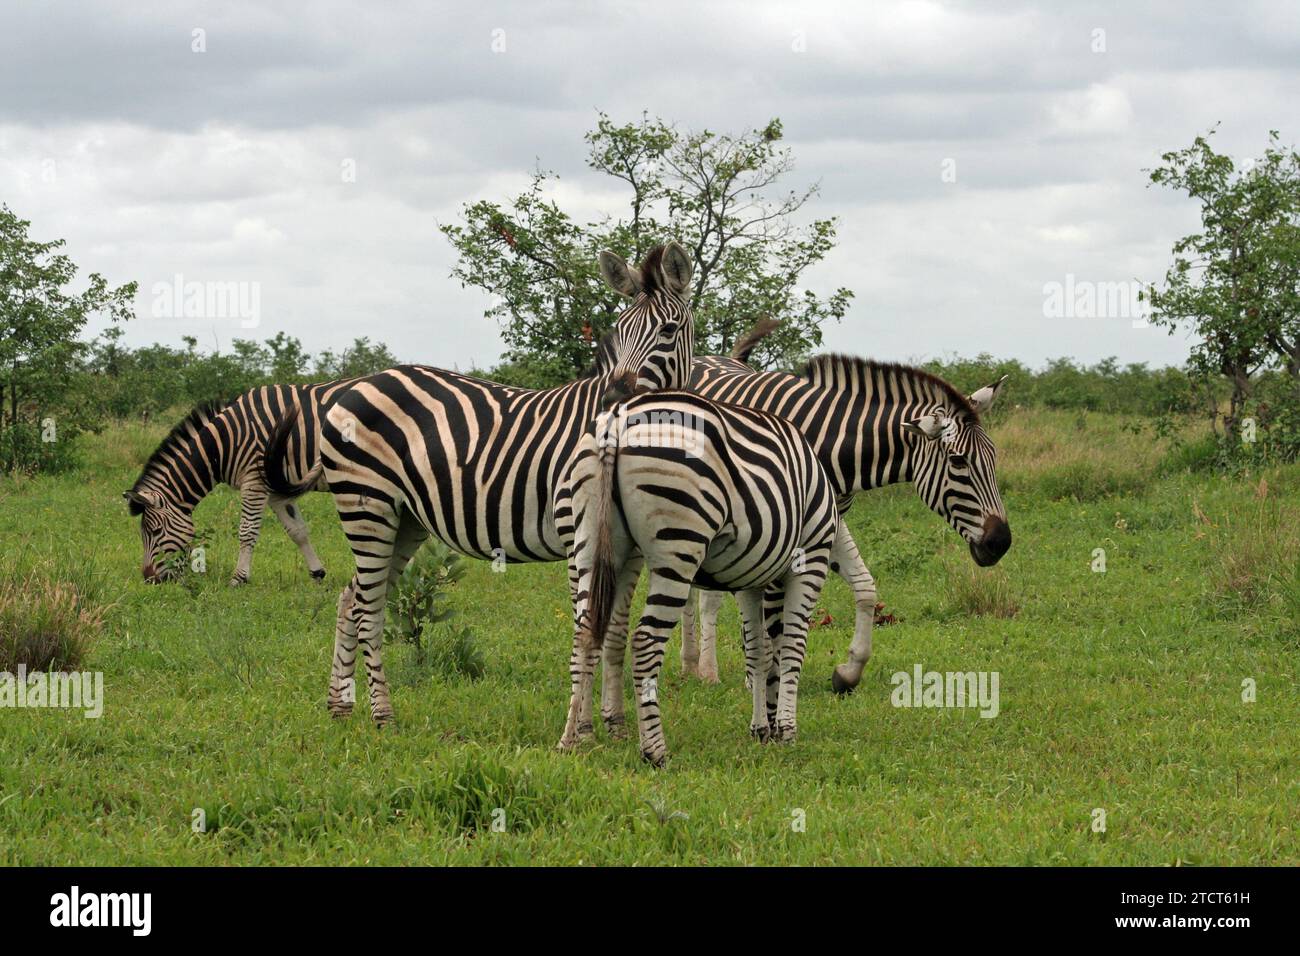 Groupe de quatre zébrés broutant dans le parc national Kruger, en Afrique du Sud, dans une herbe verte luxuriante montrant le meilleur de la faune africaine Banque D'Images